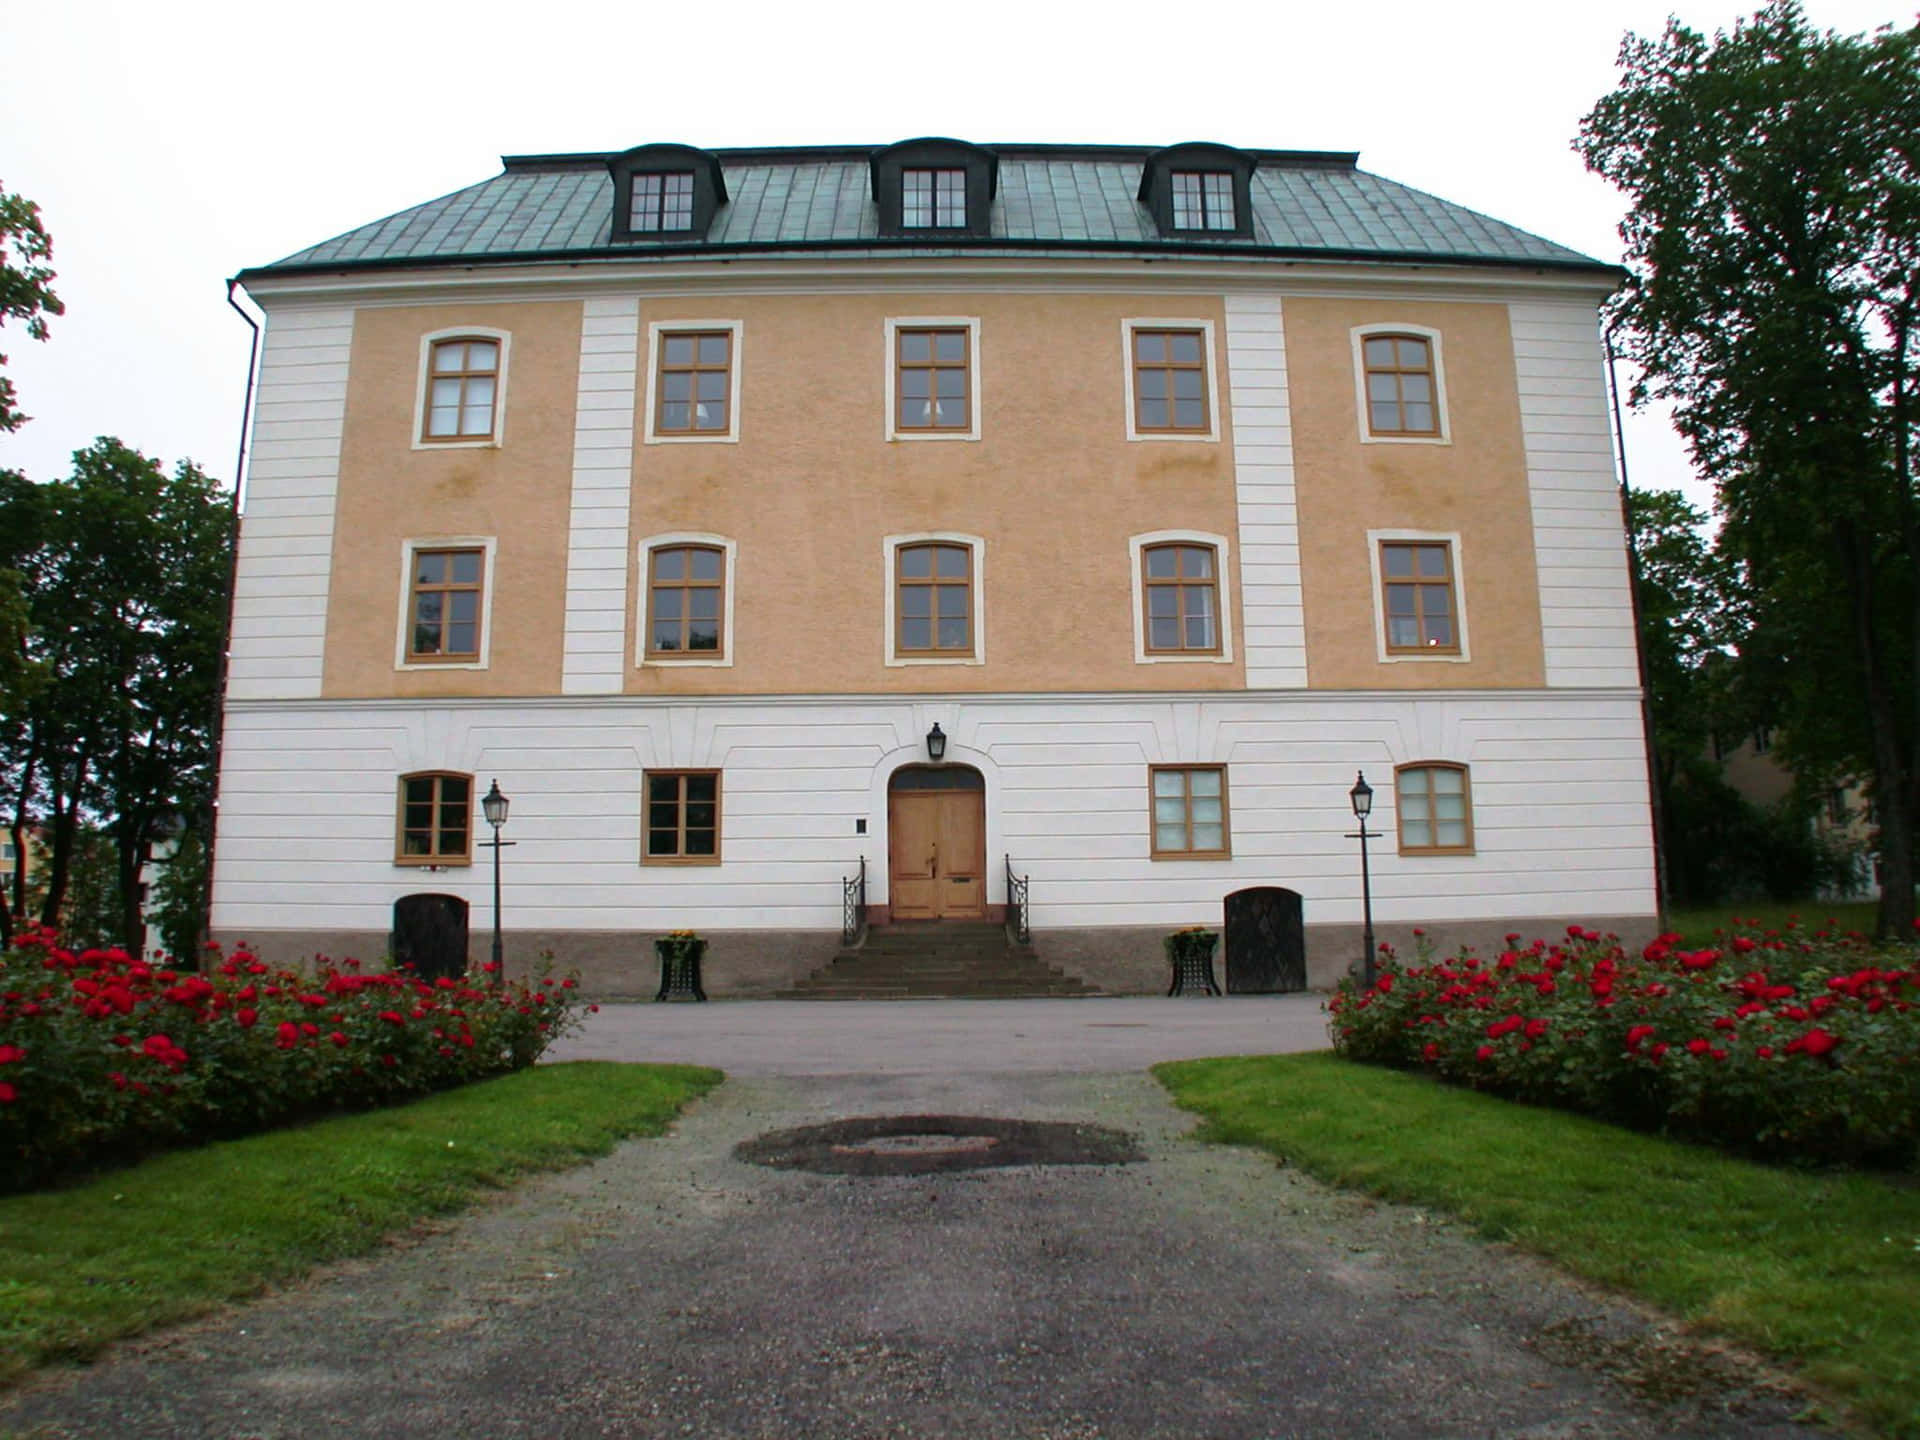 Gavle Historical Building Sweden.jpg Wallpaper